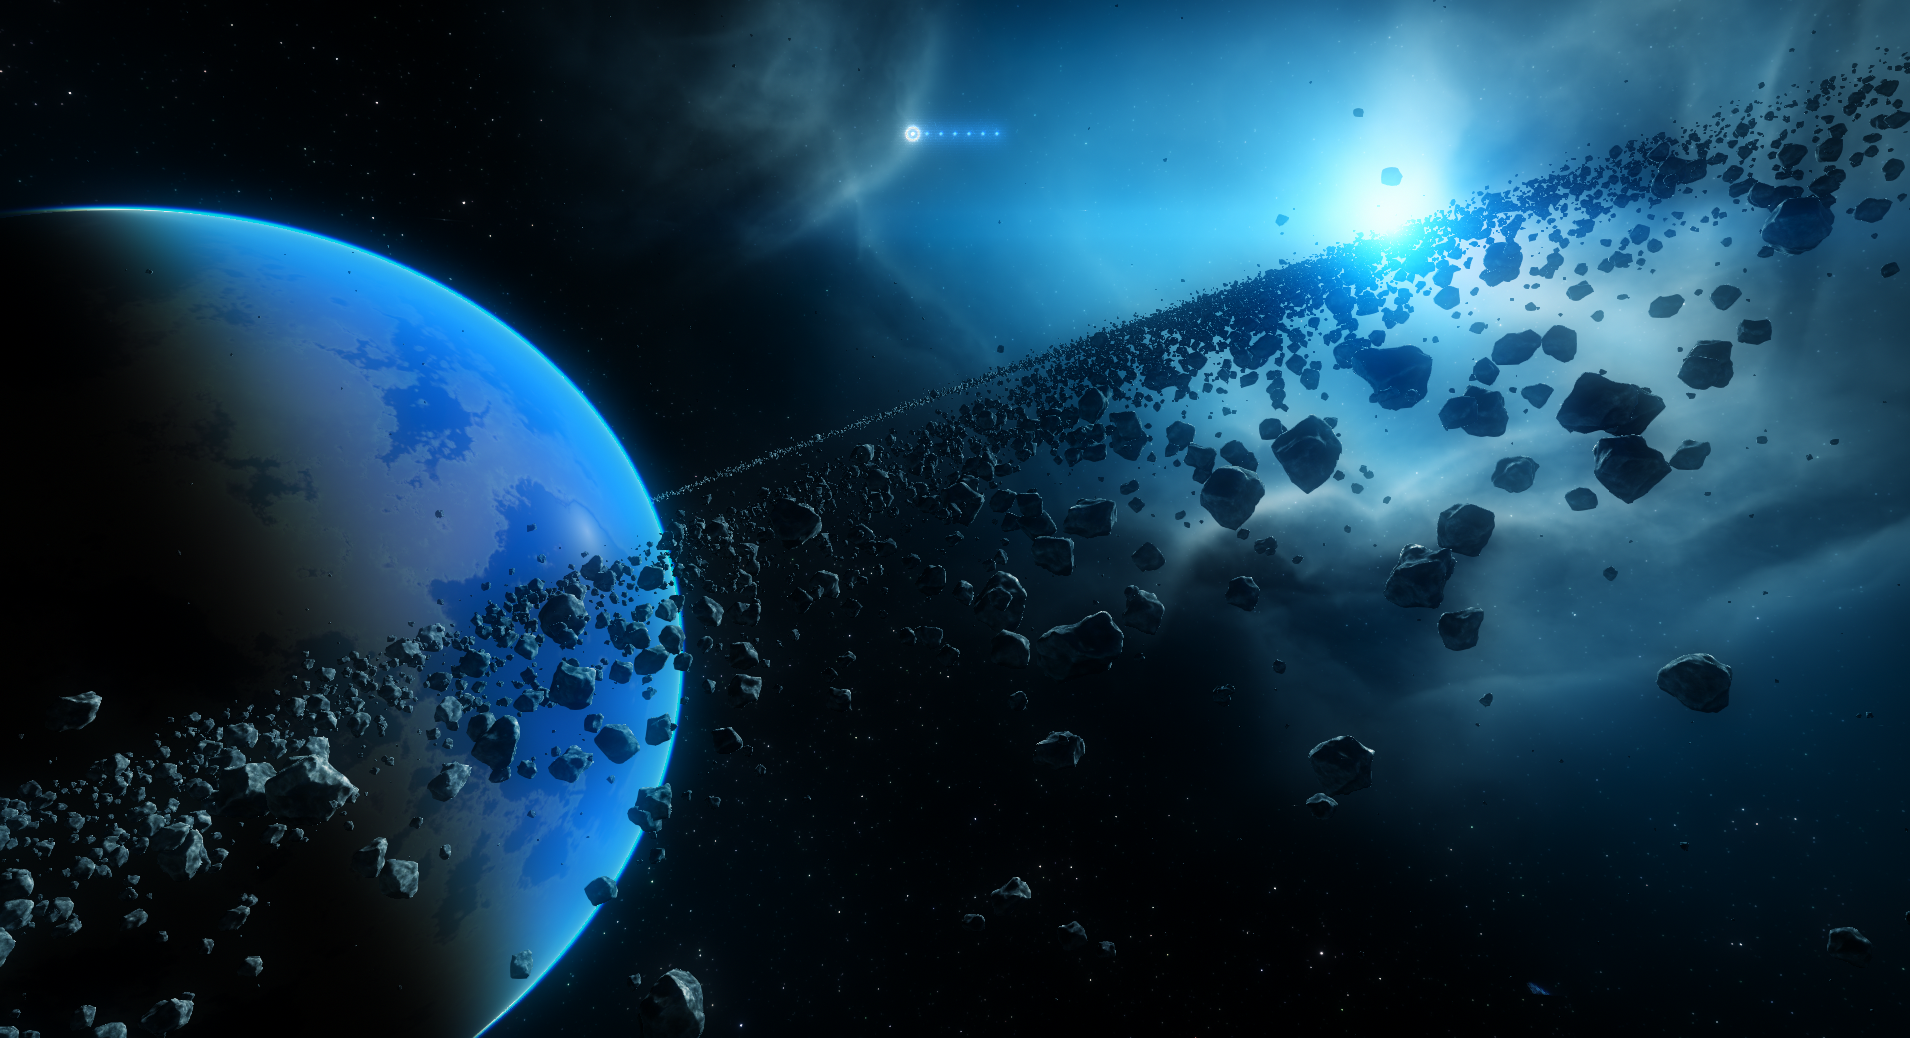 دانلود رایگان عکس واقعی از کمربند سیارکی در فضا 1402